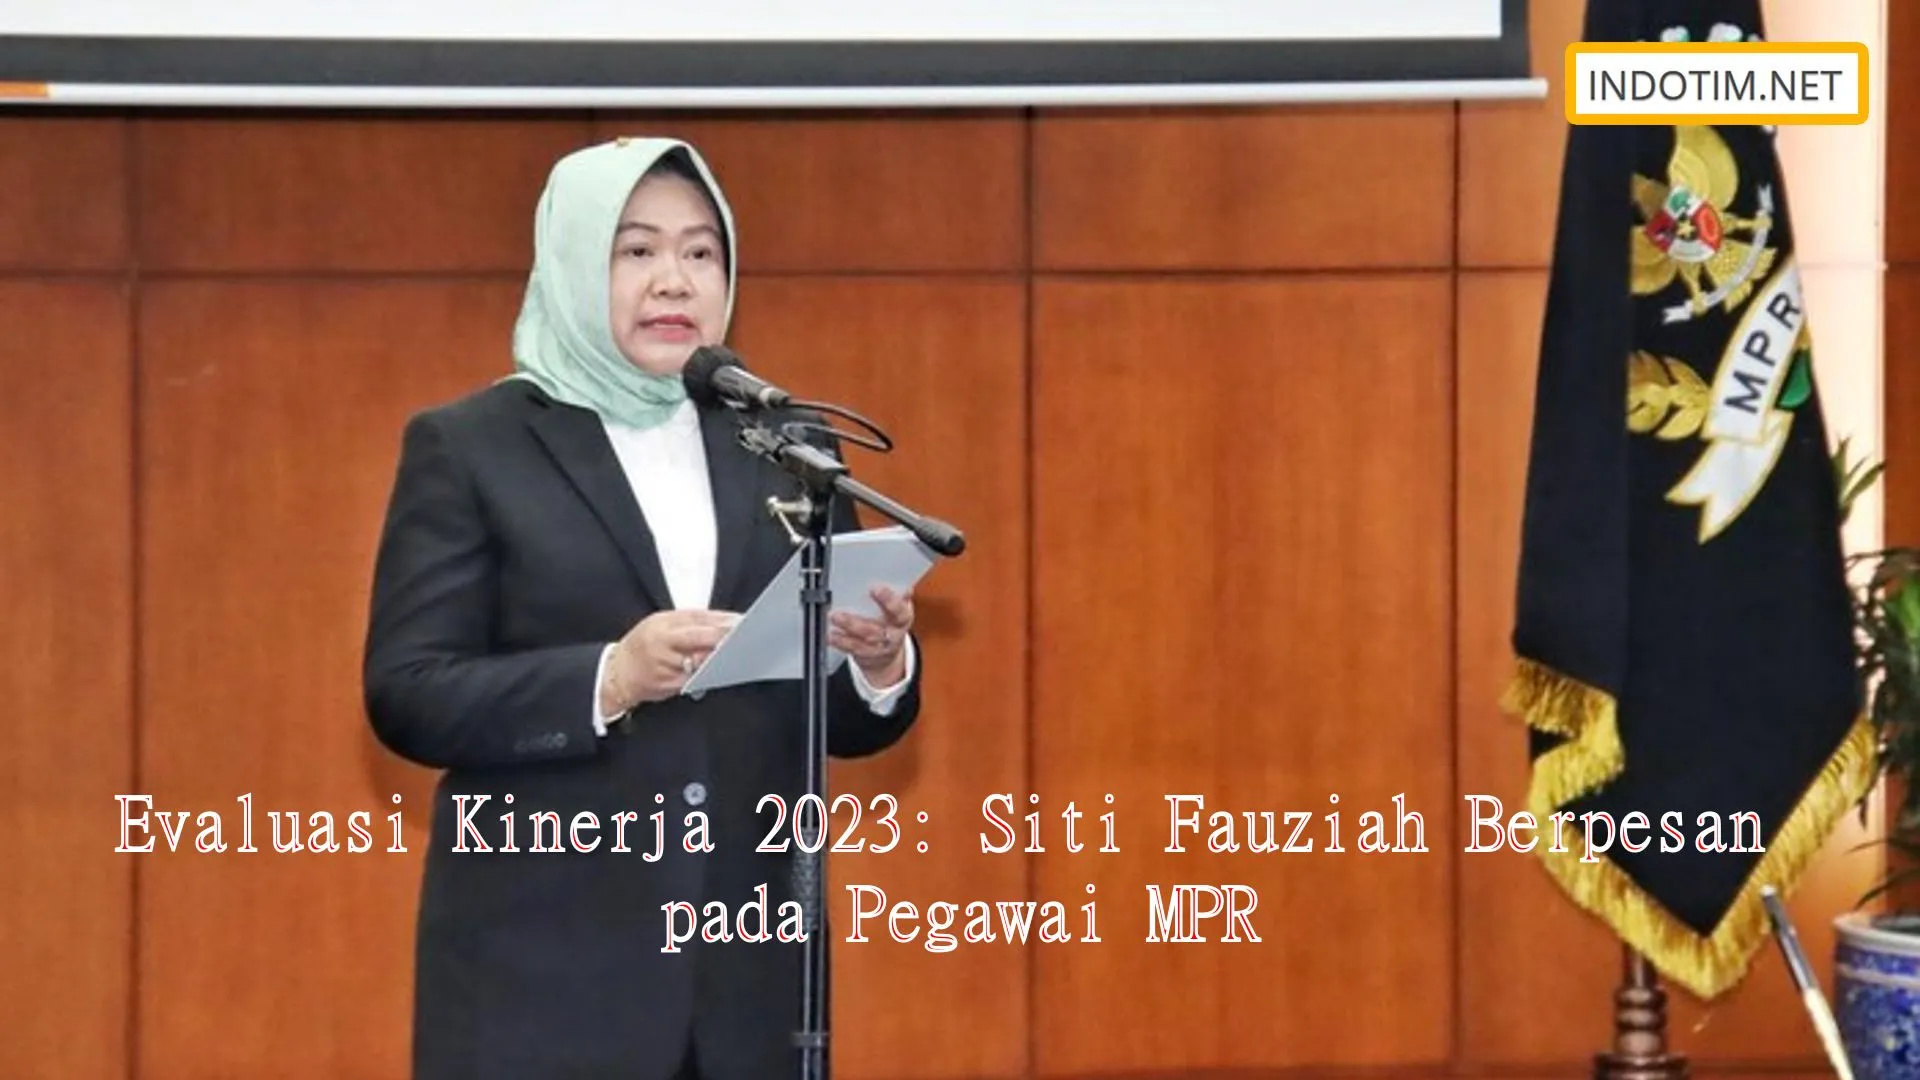 Evaluasi Kinerja 2023: Siti Fauziah Berpesan pada Pegawai MPR